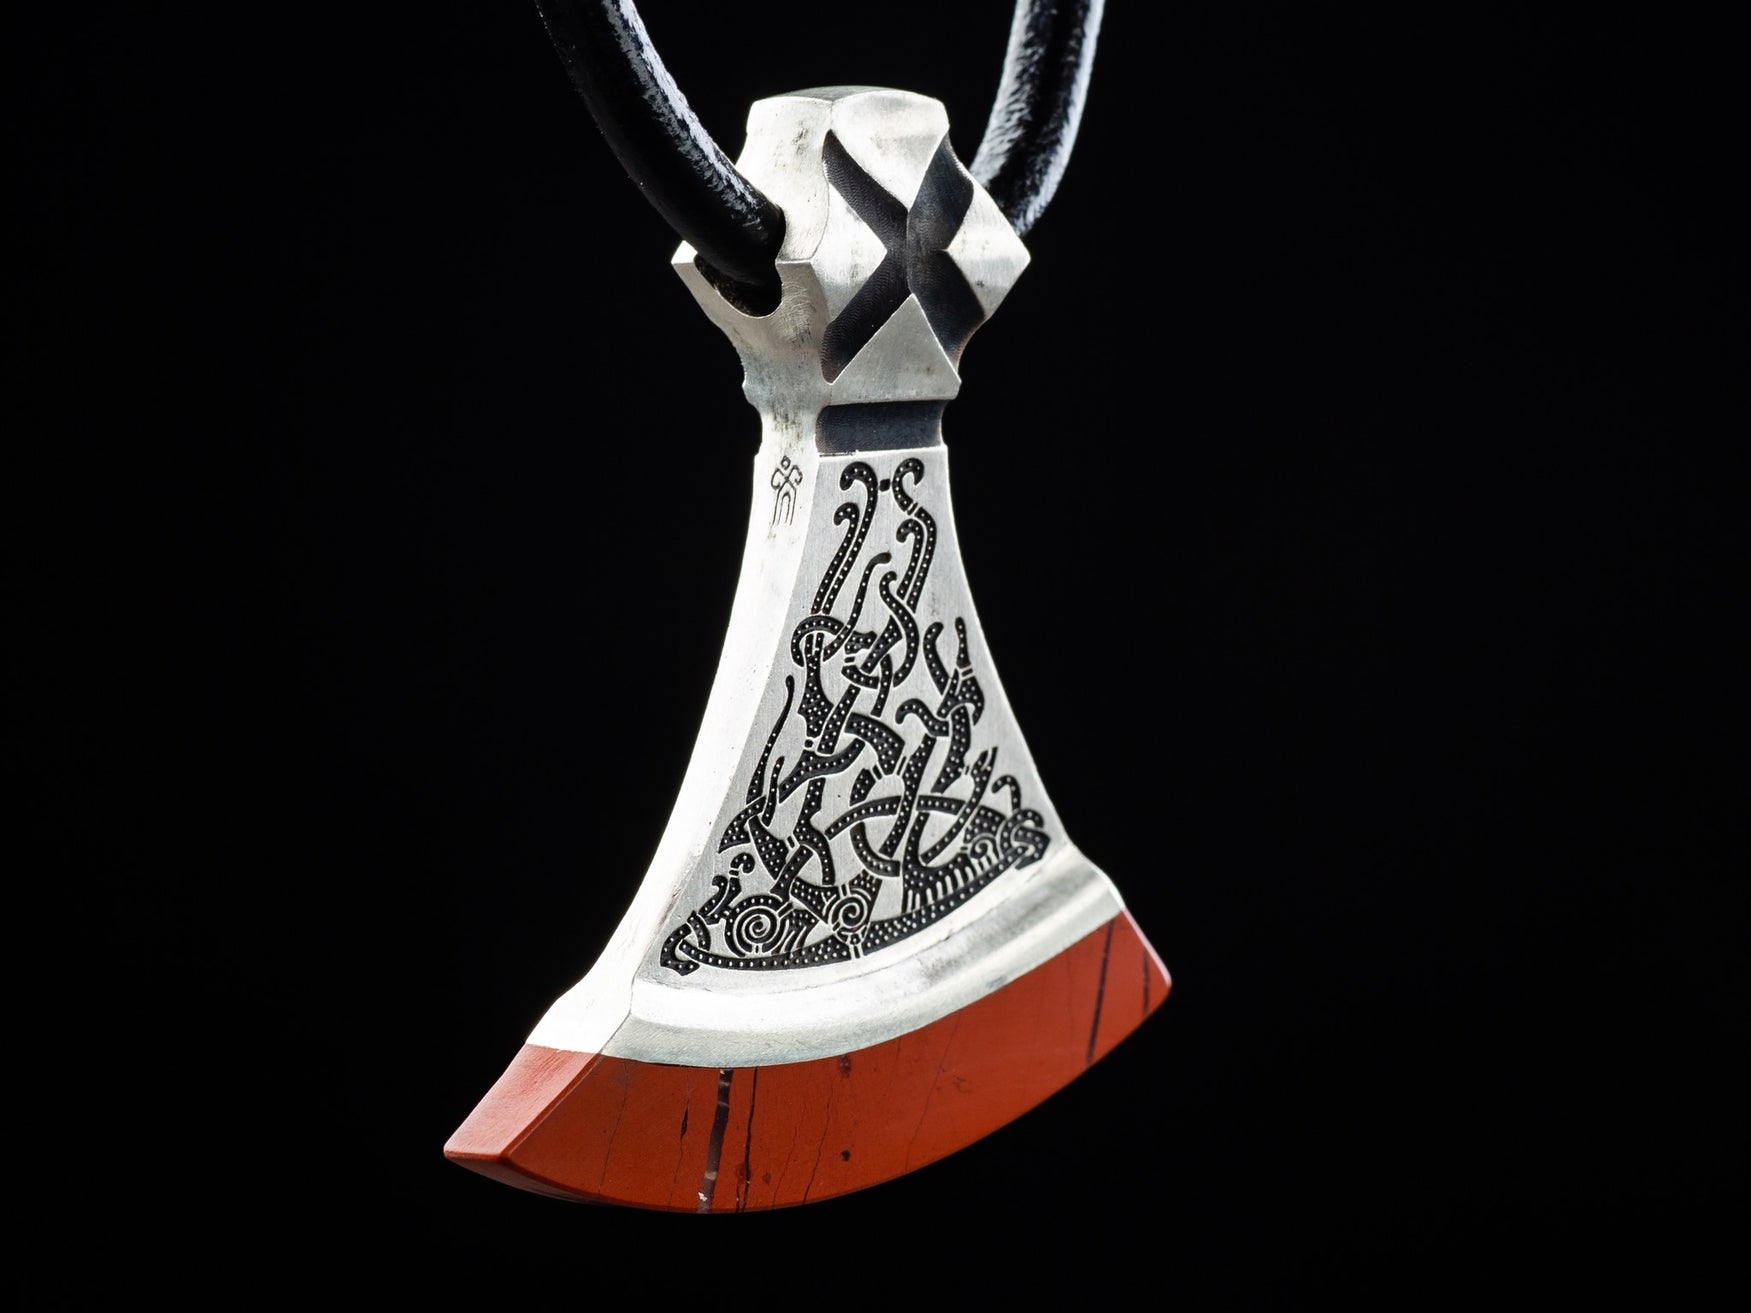 foliate ornament of a silver axe